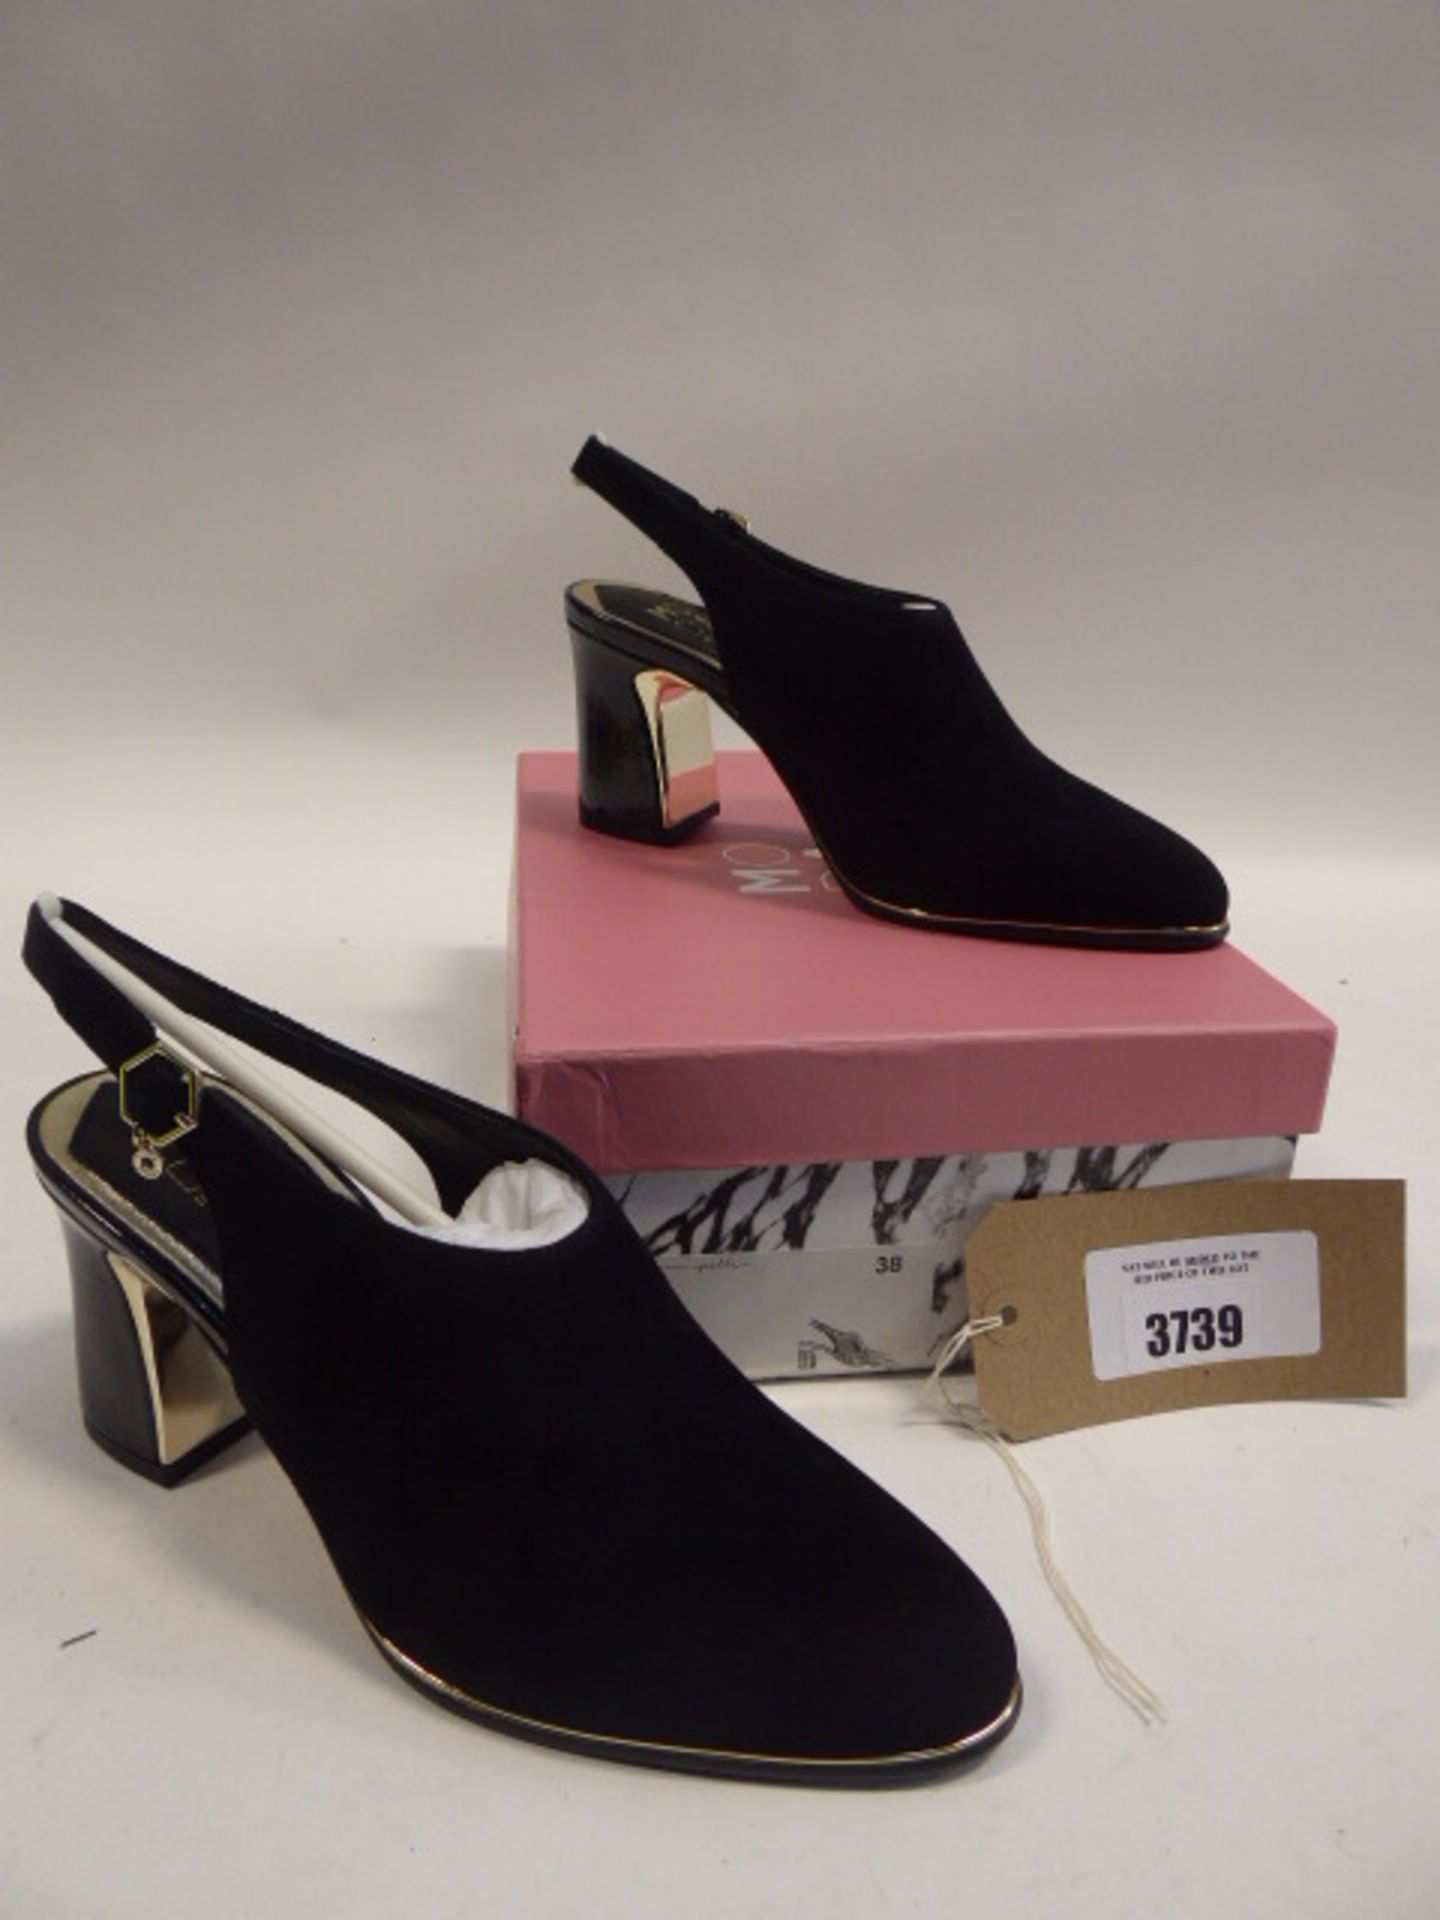 Moda in Pelle Dezzie black suede heels size EU 38 - Image 2 of 2